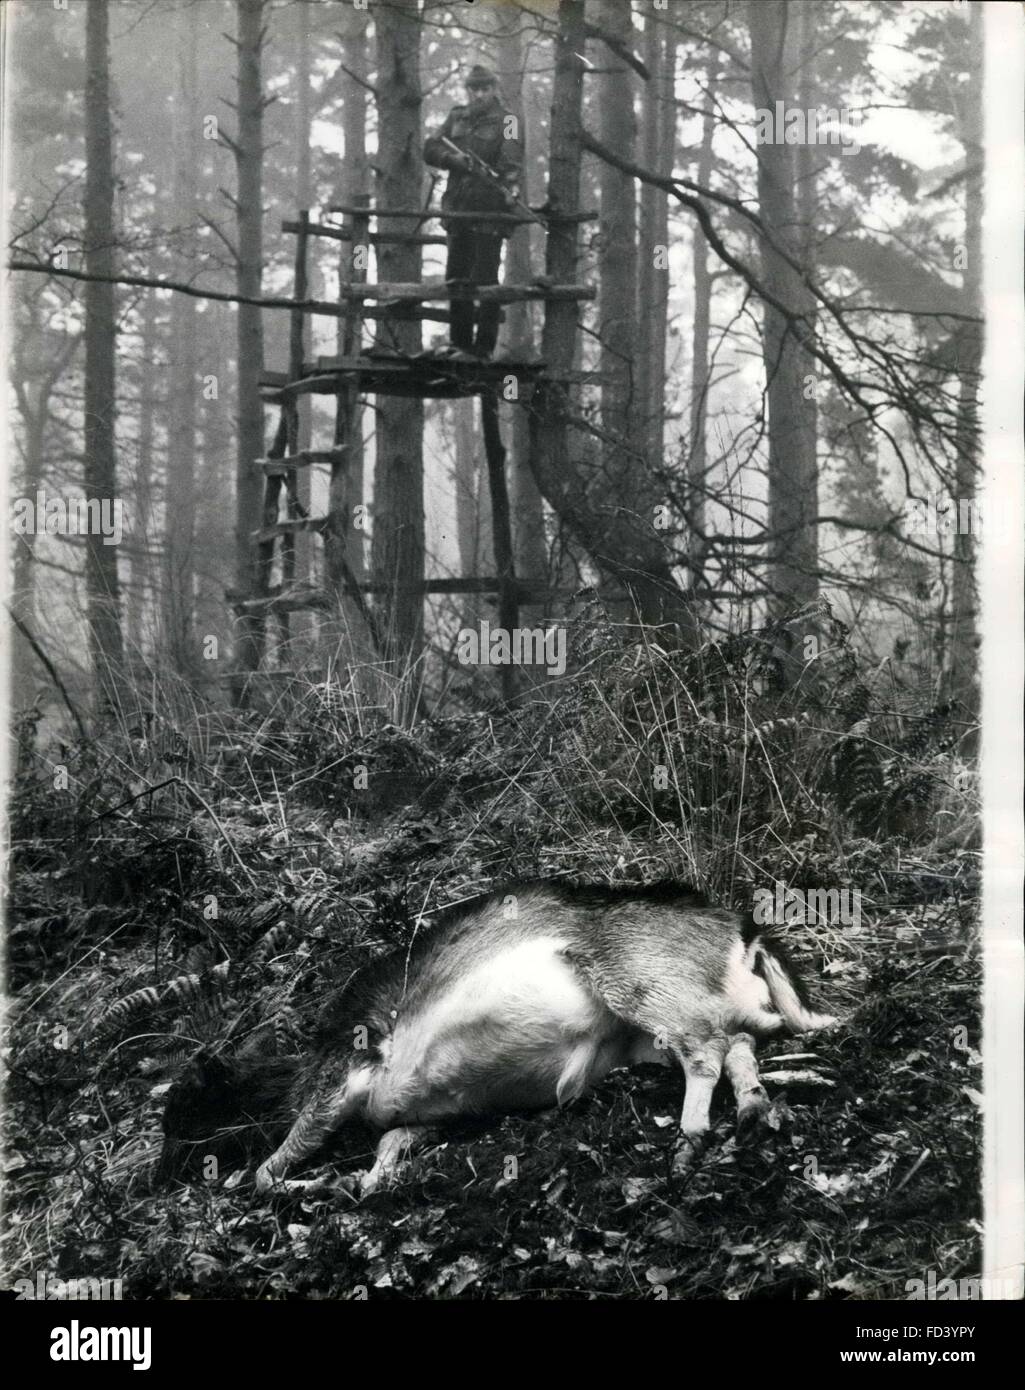 1962-Hirsch, dass hatte zu sterben: Die harte Hirsche im New Forest müssen jedes Jahr in ihrem eigenen Interesse verdünnt werden. Und der Tod kommt schnell, menschlich. Eigentlich war der Hirsch in die Bilder ein Opfer seiner eigenen Torheit. Er wurde erschossen, Schönheiten, die er junge Bäume und der Rest der schwer zerstörte von folgenden Anzug abgeraten werden musste. In der Regel nur die gamed kranke oder schwache Mitglieder der Herde werden getötet, wenn Herden spektakulär sind. Die Maksman war Fred Cartier, der Förster Kommission Spiel für England und Wales. Seinen Job staler trainieren, und er sagt, dass Rehe töten die wenigsten angenehm ist die Stockfoto